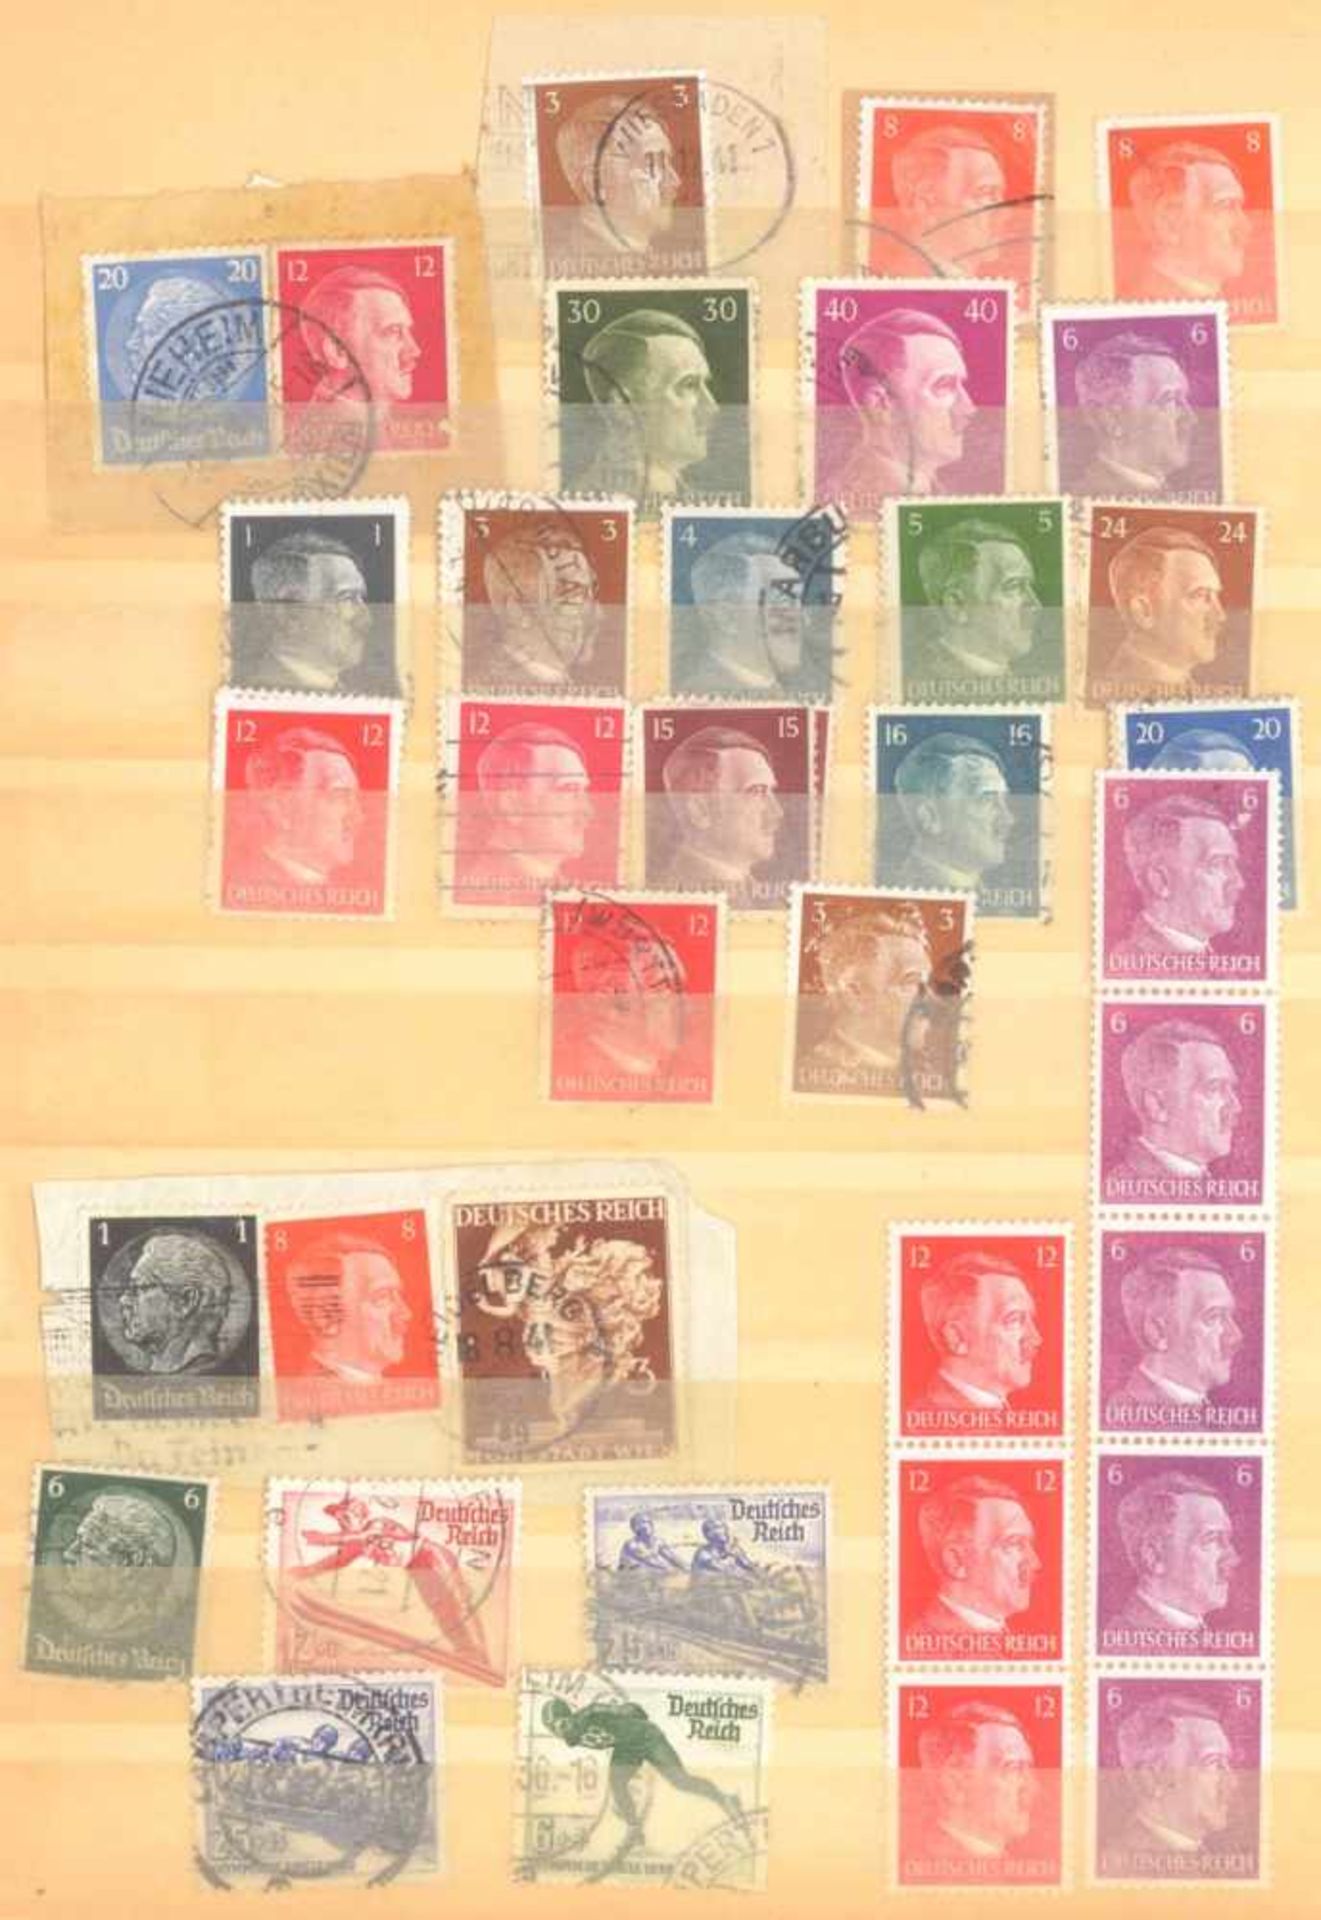 FRANKENTHALER NACHLASSuriger Nachlass mit Briefmarken und Belegen. Dabei DeutschesReich, altes - Bild 18 aus 46